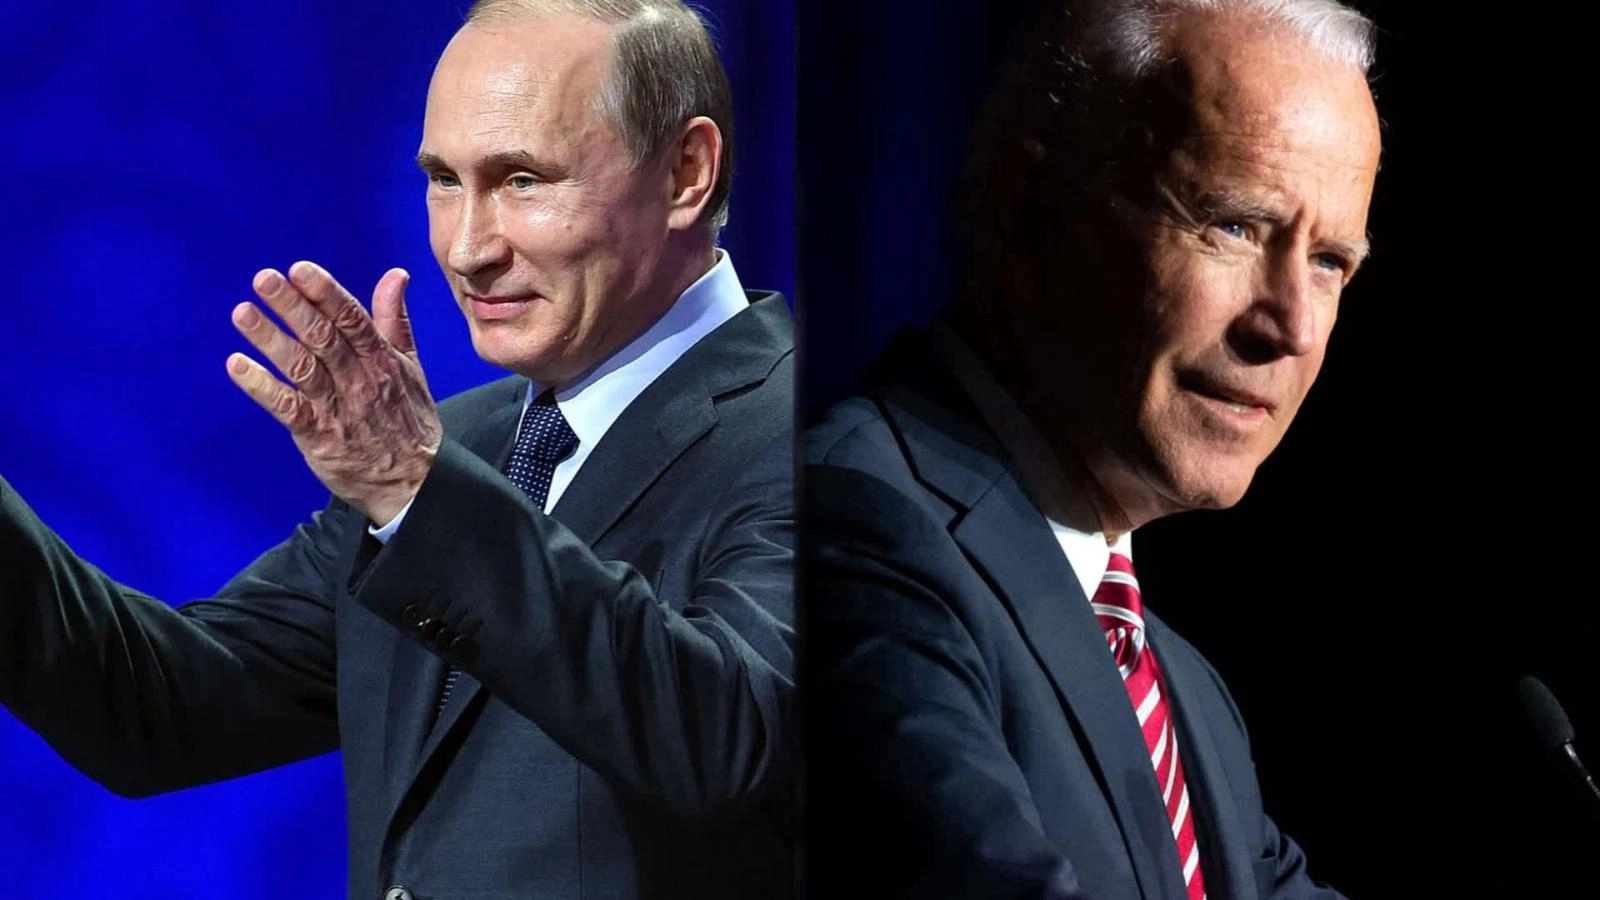 Rusia “saluda” la disposición de Joe Biden de prorrogar el tratado de desarme nuclear Nuevo Start